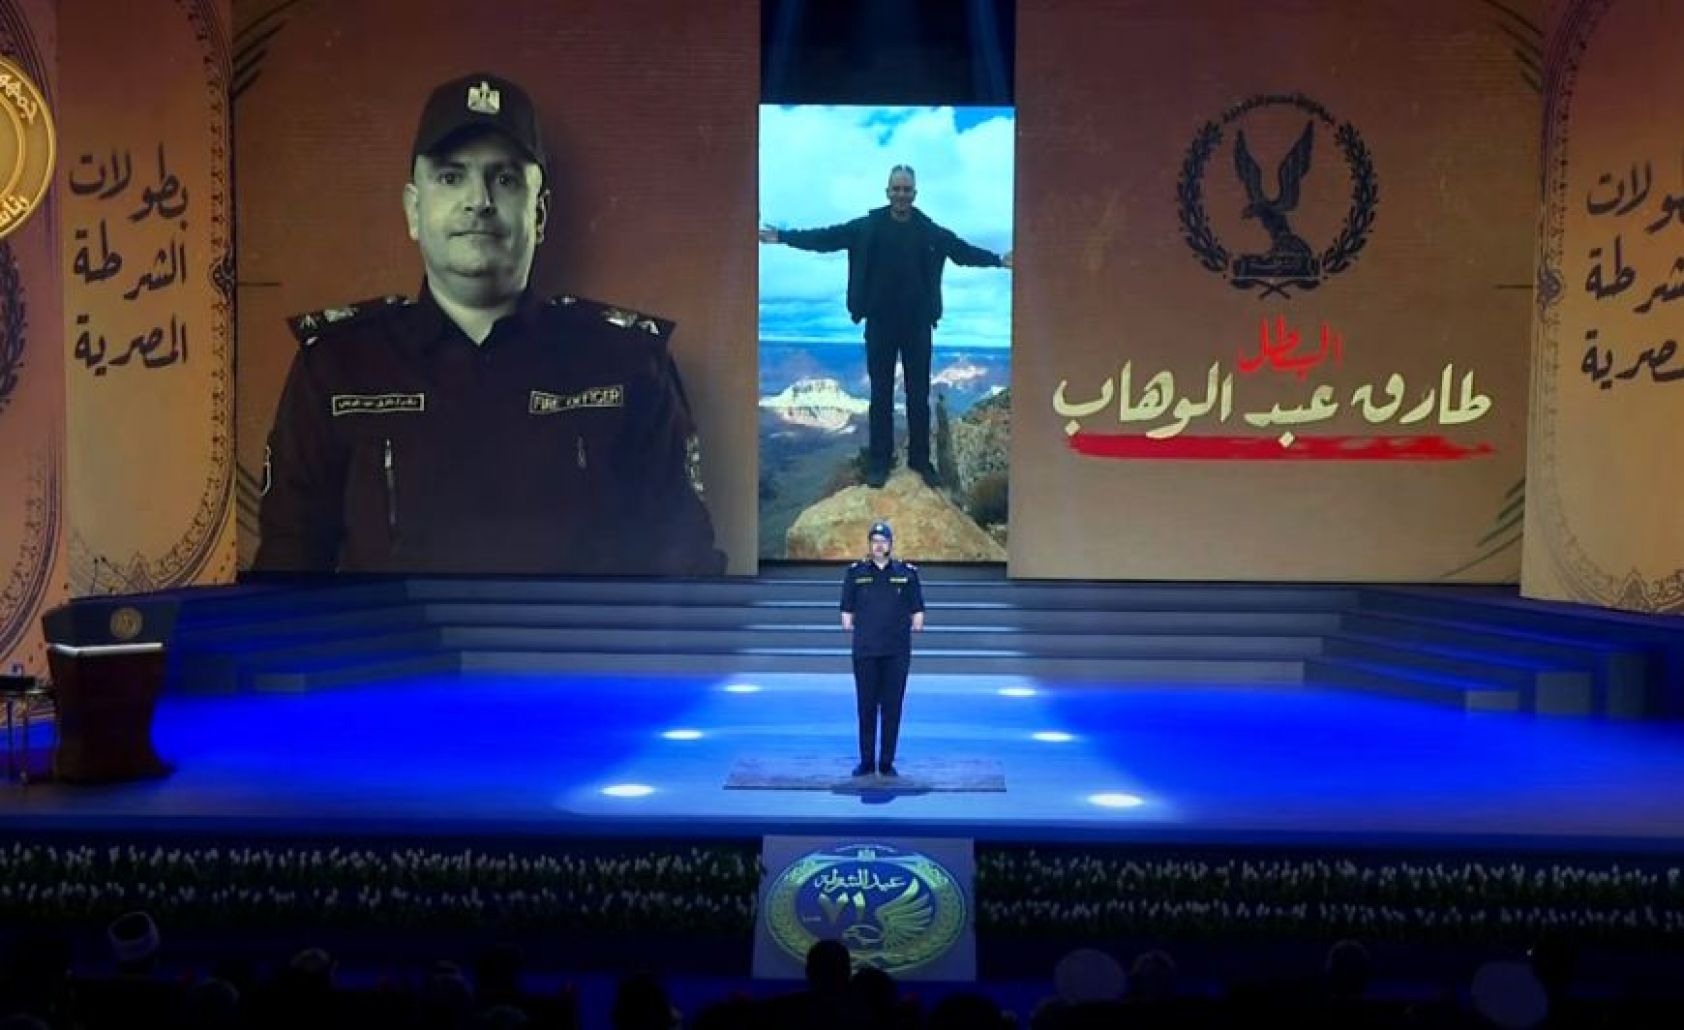 المقدم طارق عبدالوهاب: محدش هيطفي فرحتنا "شاهد" | الوفد